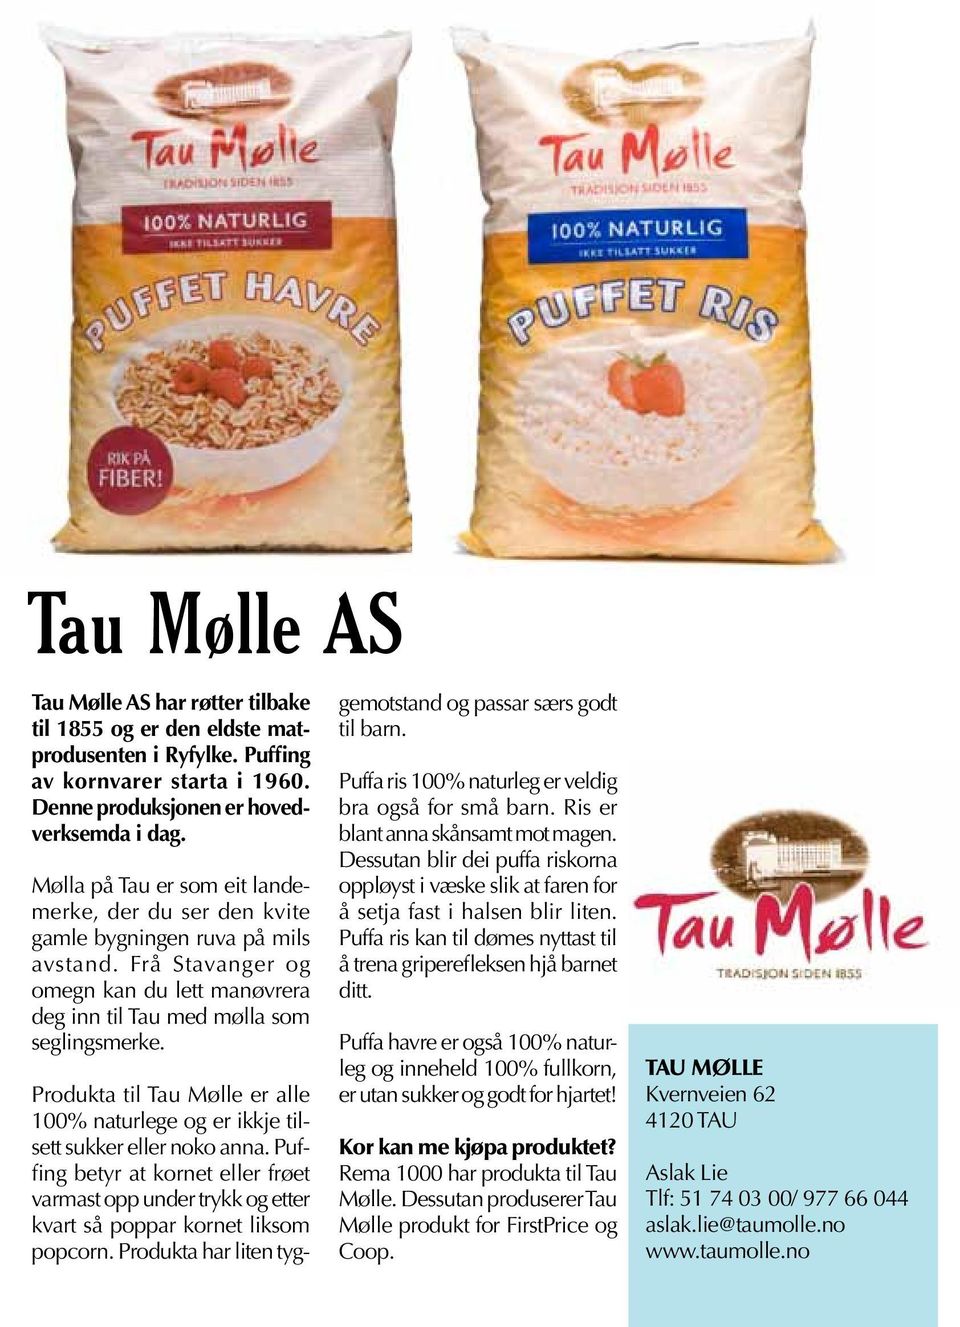 Produkta til Tau Mølle er alle 100% naturlege og er ikkje tilsett sukker eller noko anna. Puffing betyr at kornet eller frøet varmast opp under trykk og etter kvart så poppar kornet liksom popcorn.